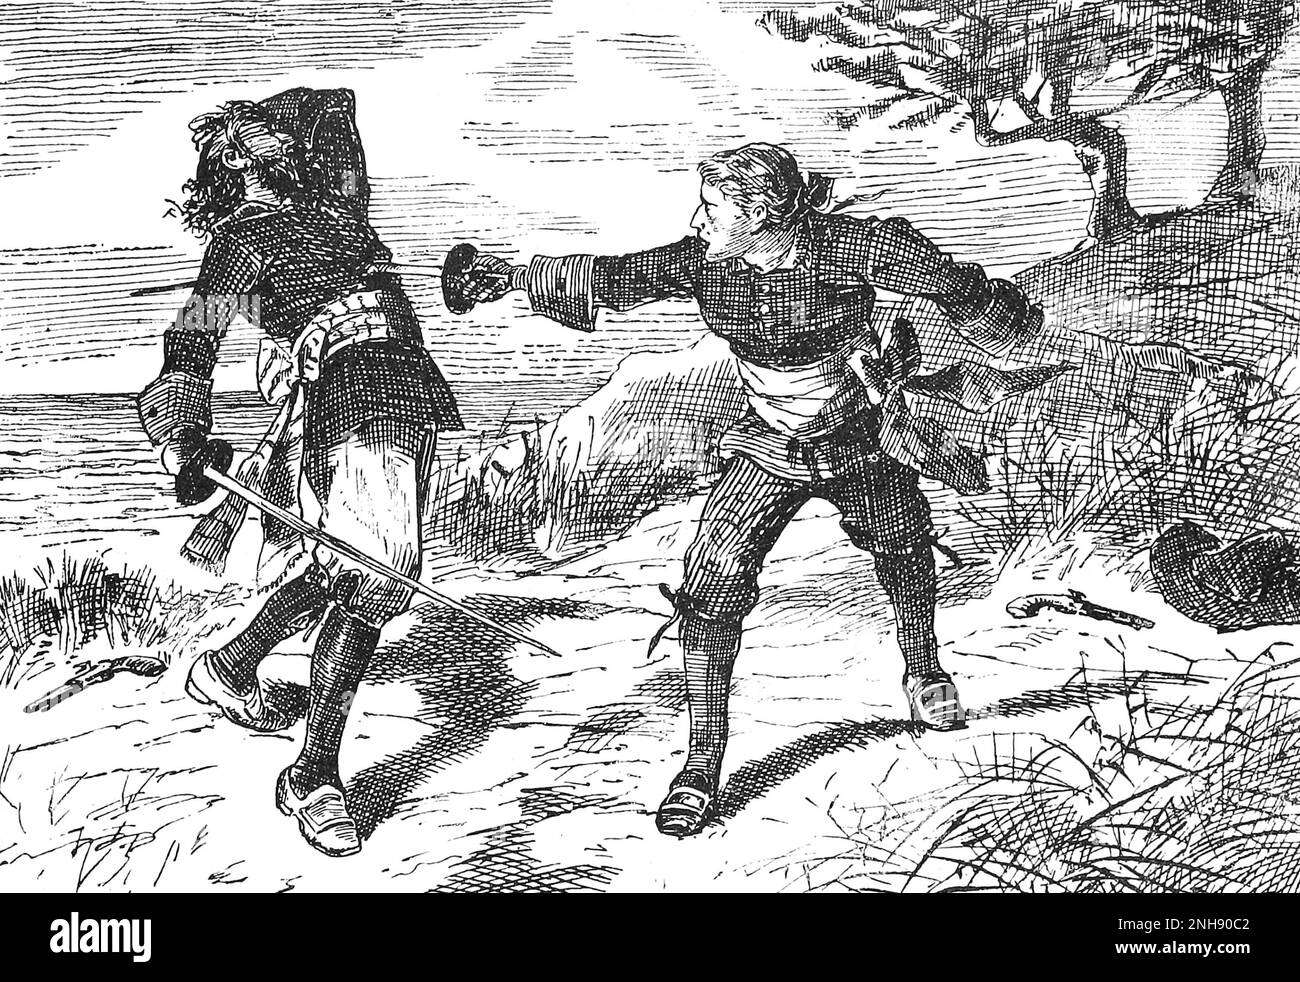 Le pirate irlandais Anne Bonny (1697-1721) déguisé en homme, tuant un autre marin dans un duel. Illustration John Abbott, 1874. Banque D'Images